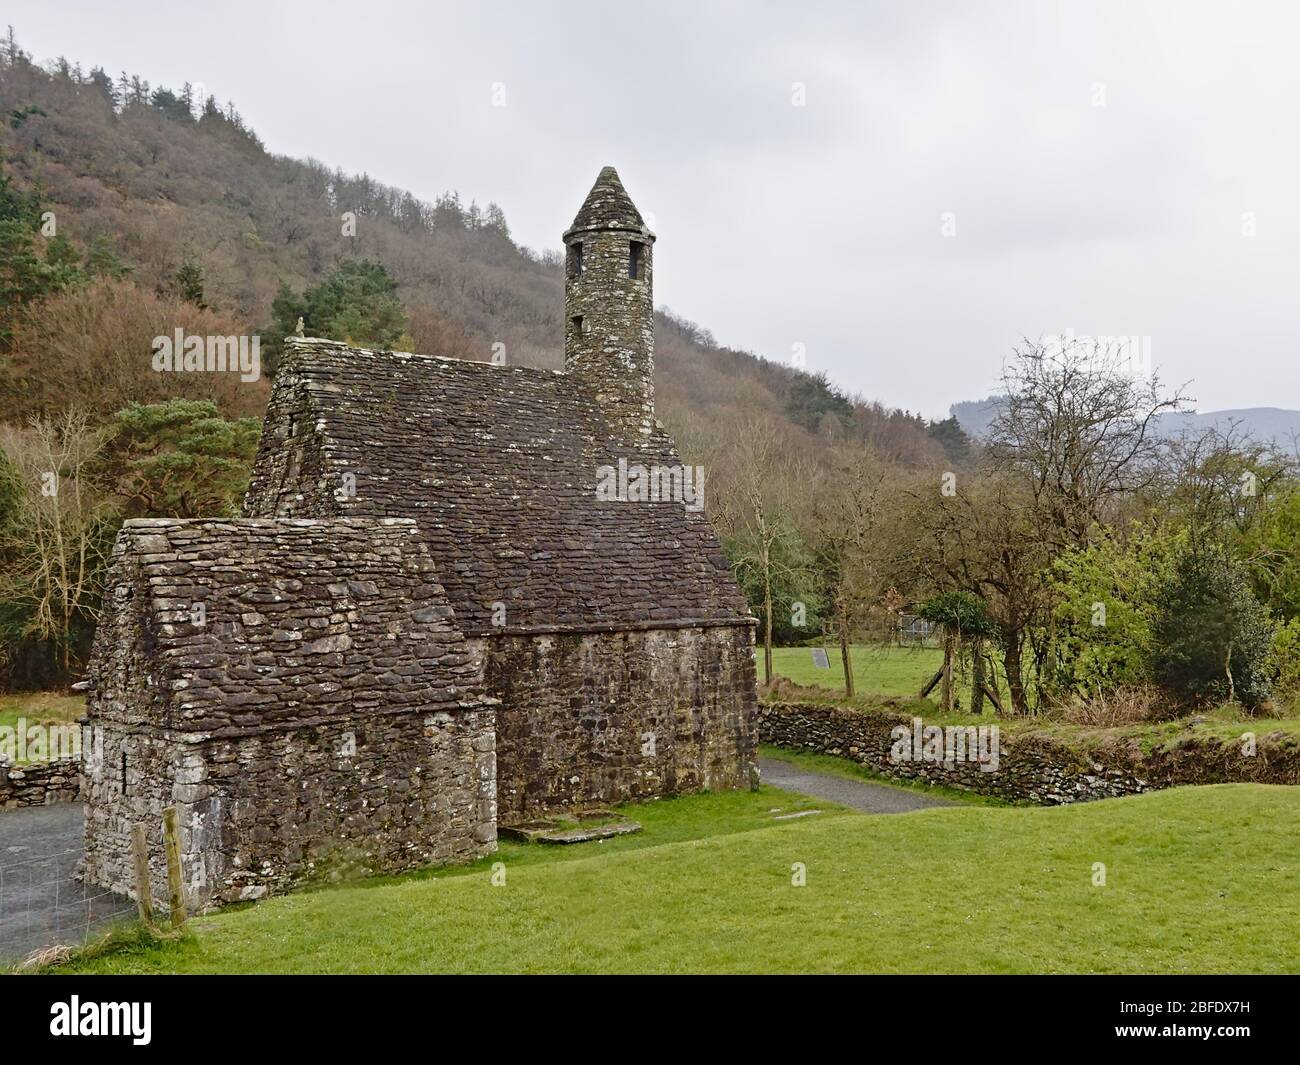 Église médiévale de Saint Kevin dans la vallée de Glendalough, le jour de la brume, montagnes de Dublin, comté de Wicklow, Irlande Banque D'Images